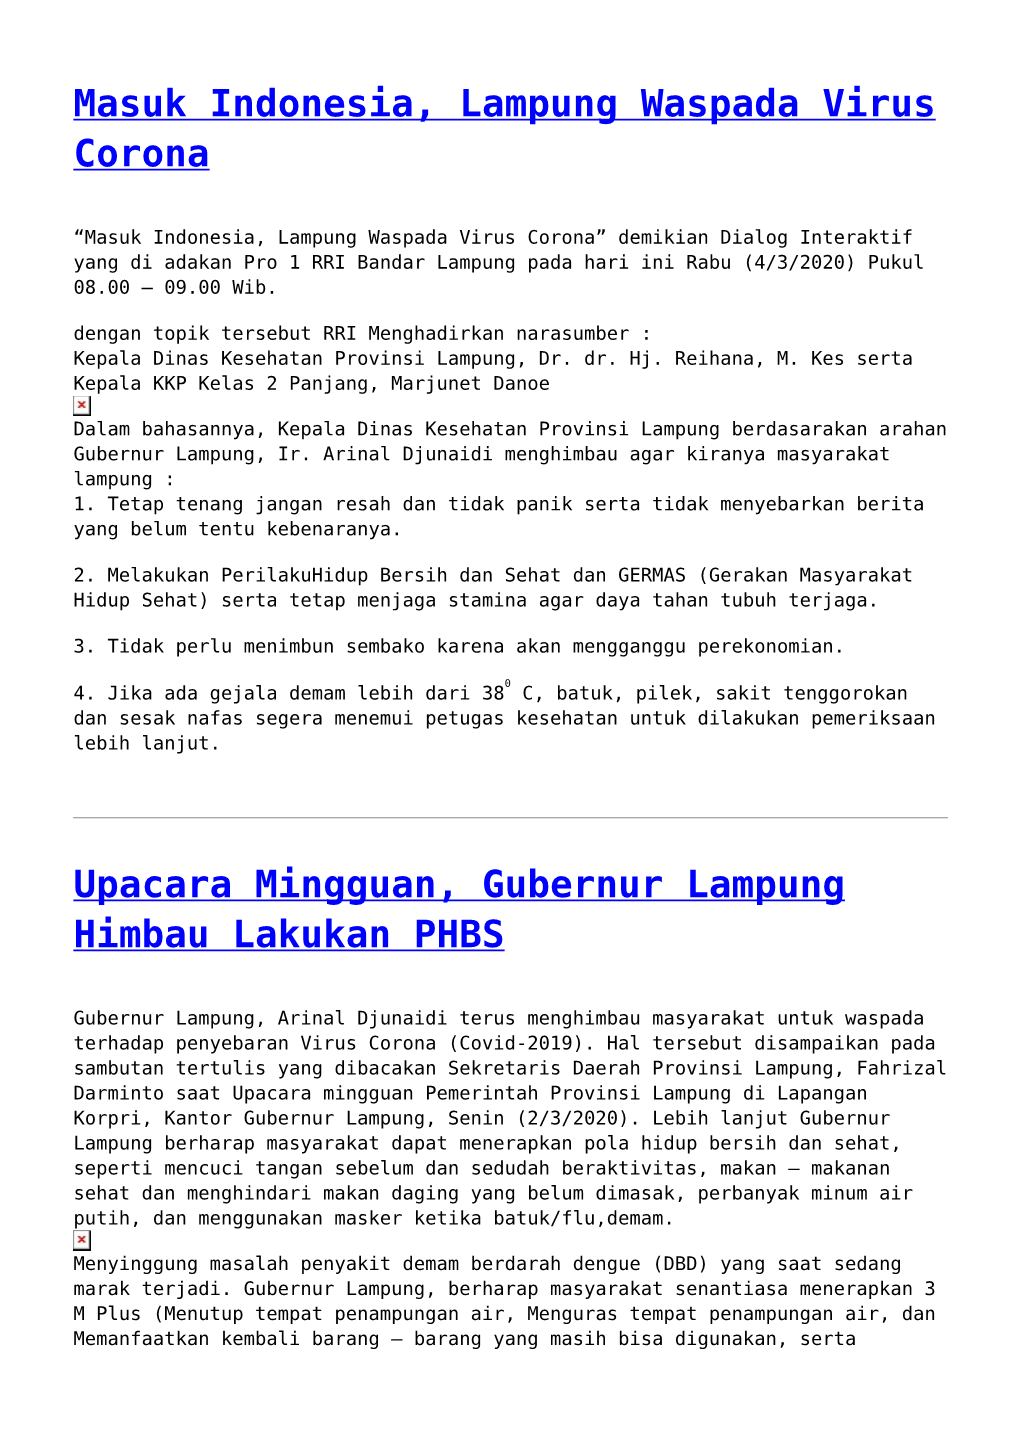 Masuk Indonesia, Lampung Waspada Virus Corona,Upacara Mingguan